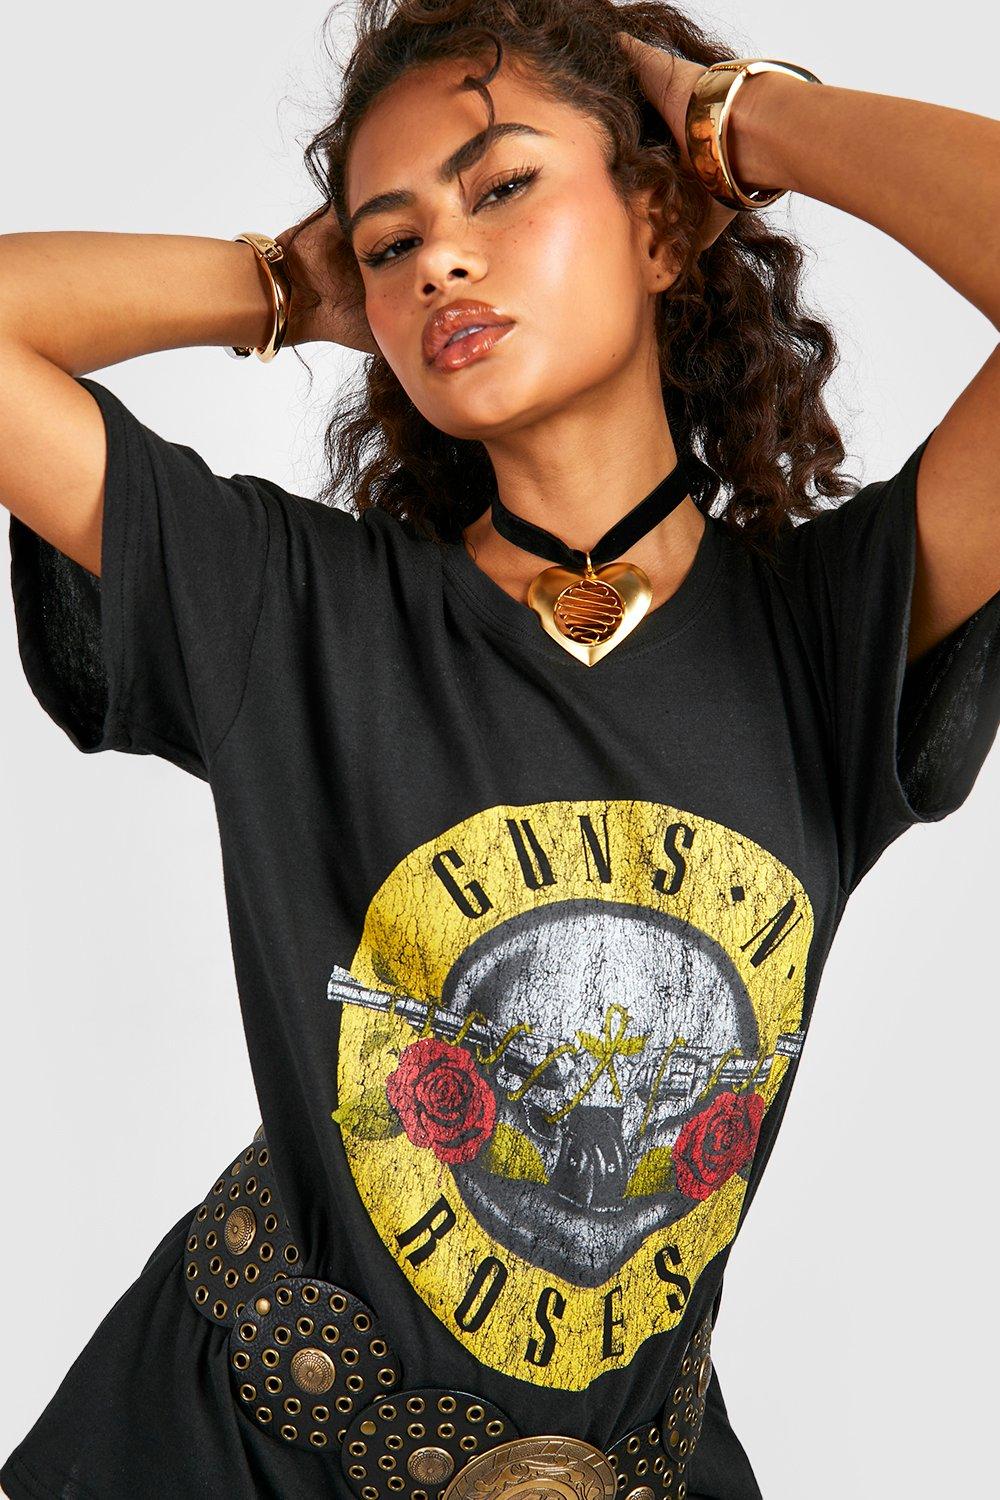 magi etisk Blive skør Guns N Roses Oversized Band T-Shirt | boohoo